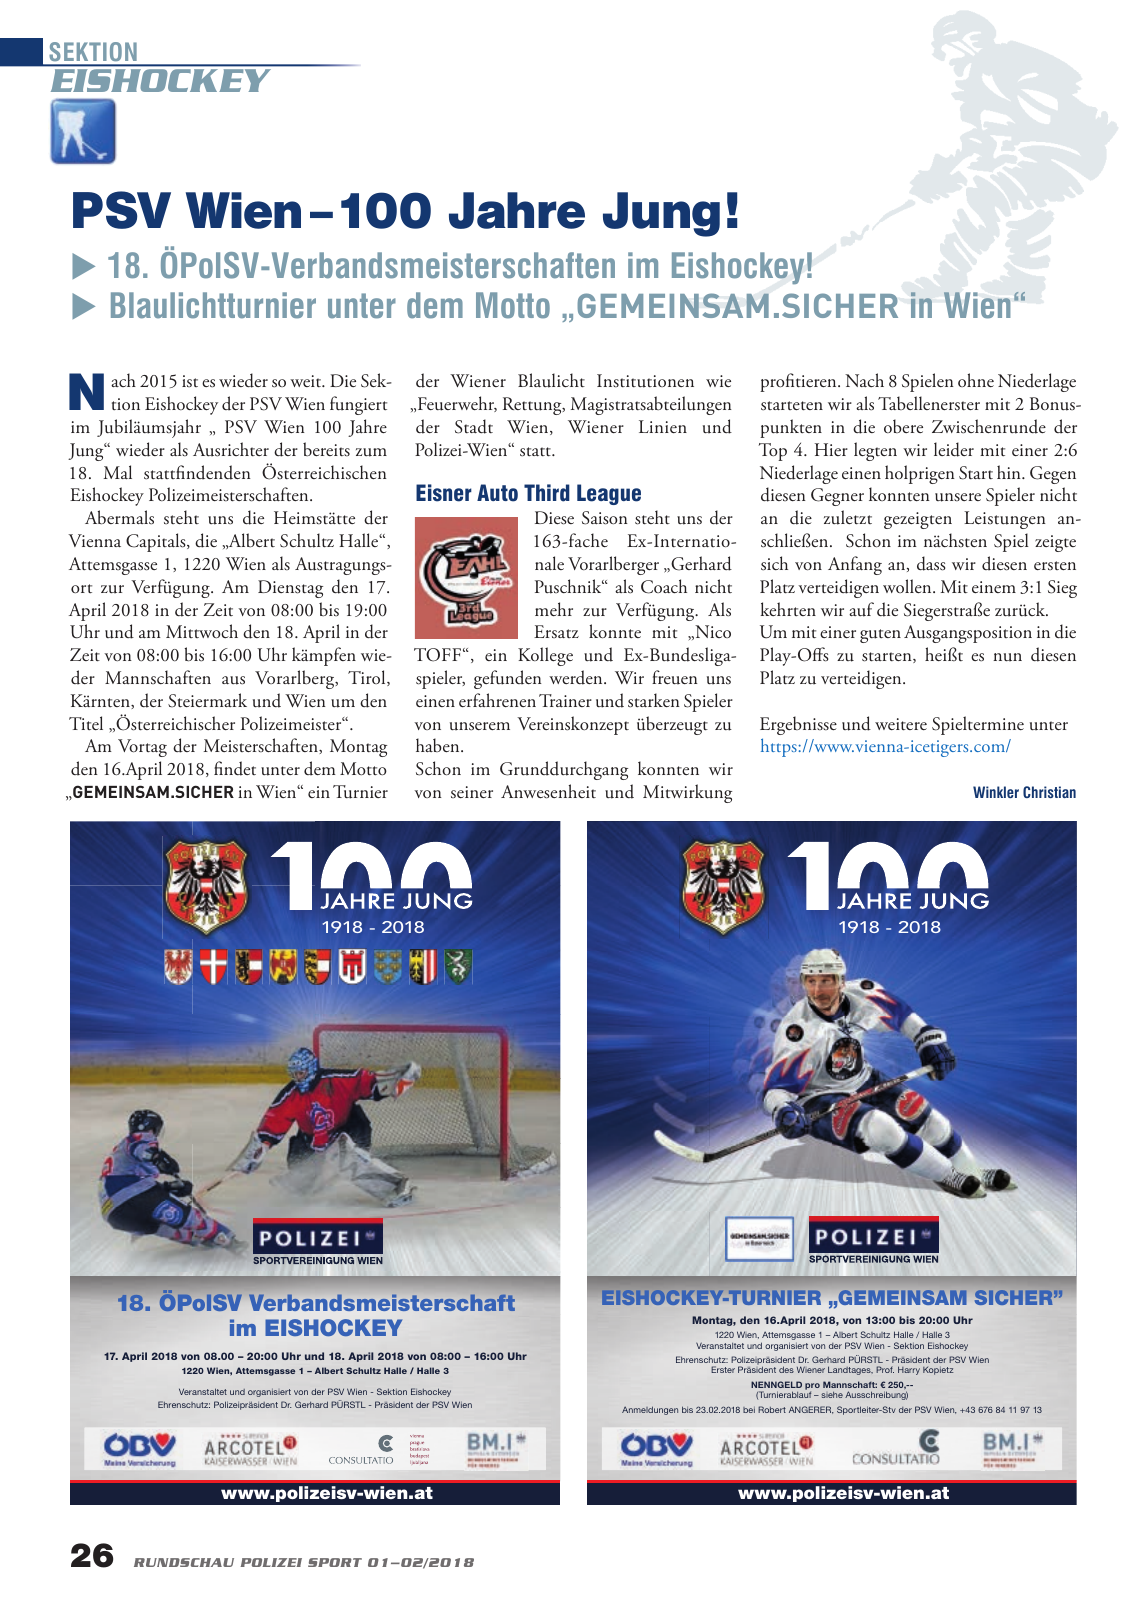 Vorschau Rundschau Polizei Sport 01-02/2018 Seite 26